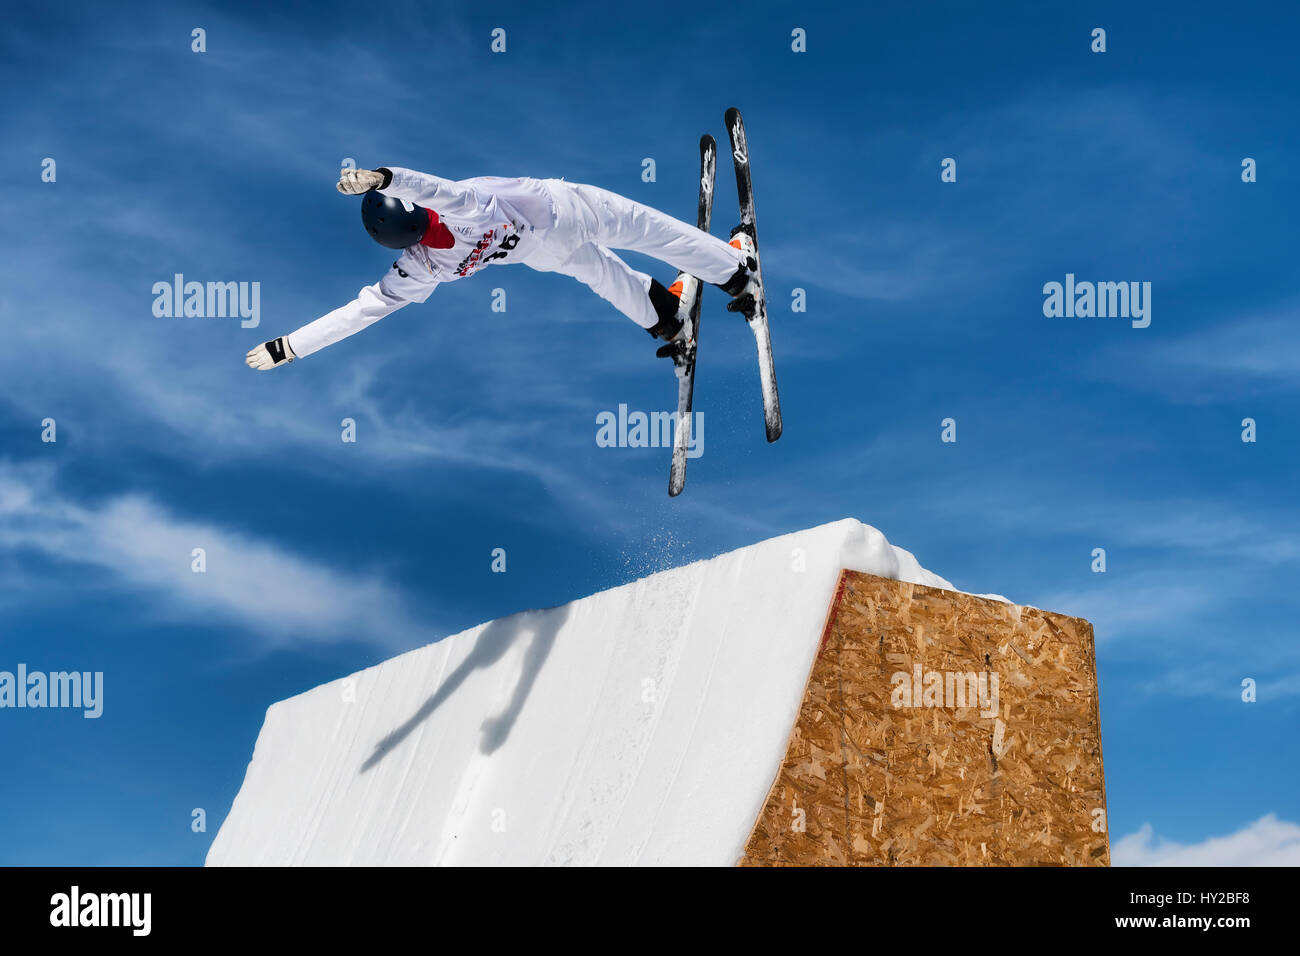 Chiesa in Valmalenco, Italie,. 31 mars, 2017. Coupe d'Europe FIS de Ski acrobatique, saut de l'athlète : Crédit Federico Rostagno/Alamy Live News Banque D'Images